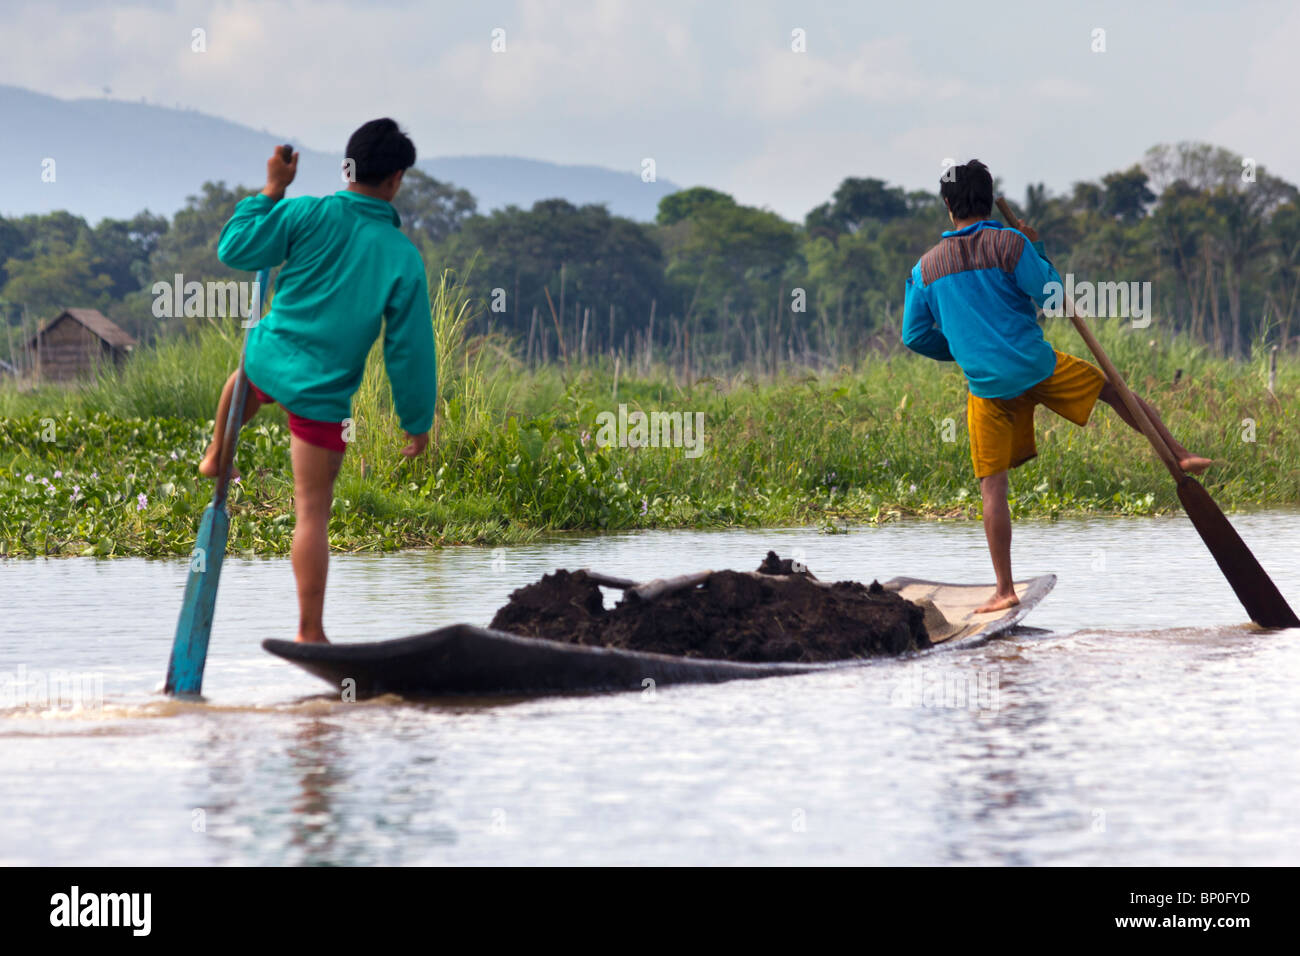 Deux hommes ethnie Intha unijambistes ramer sur un bateau avec de la terre sur le lac Inle, Myanmar Banque D'Images